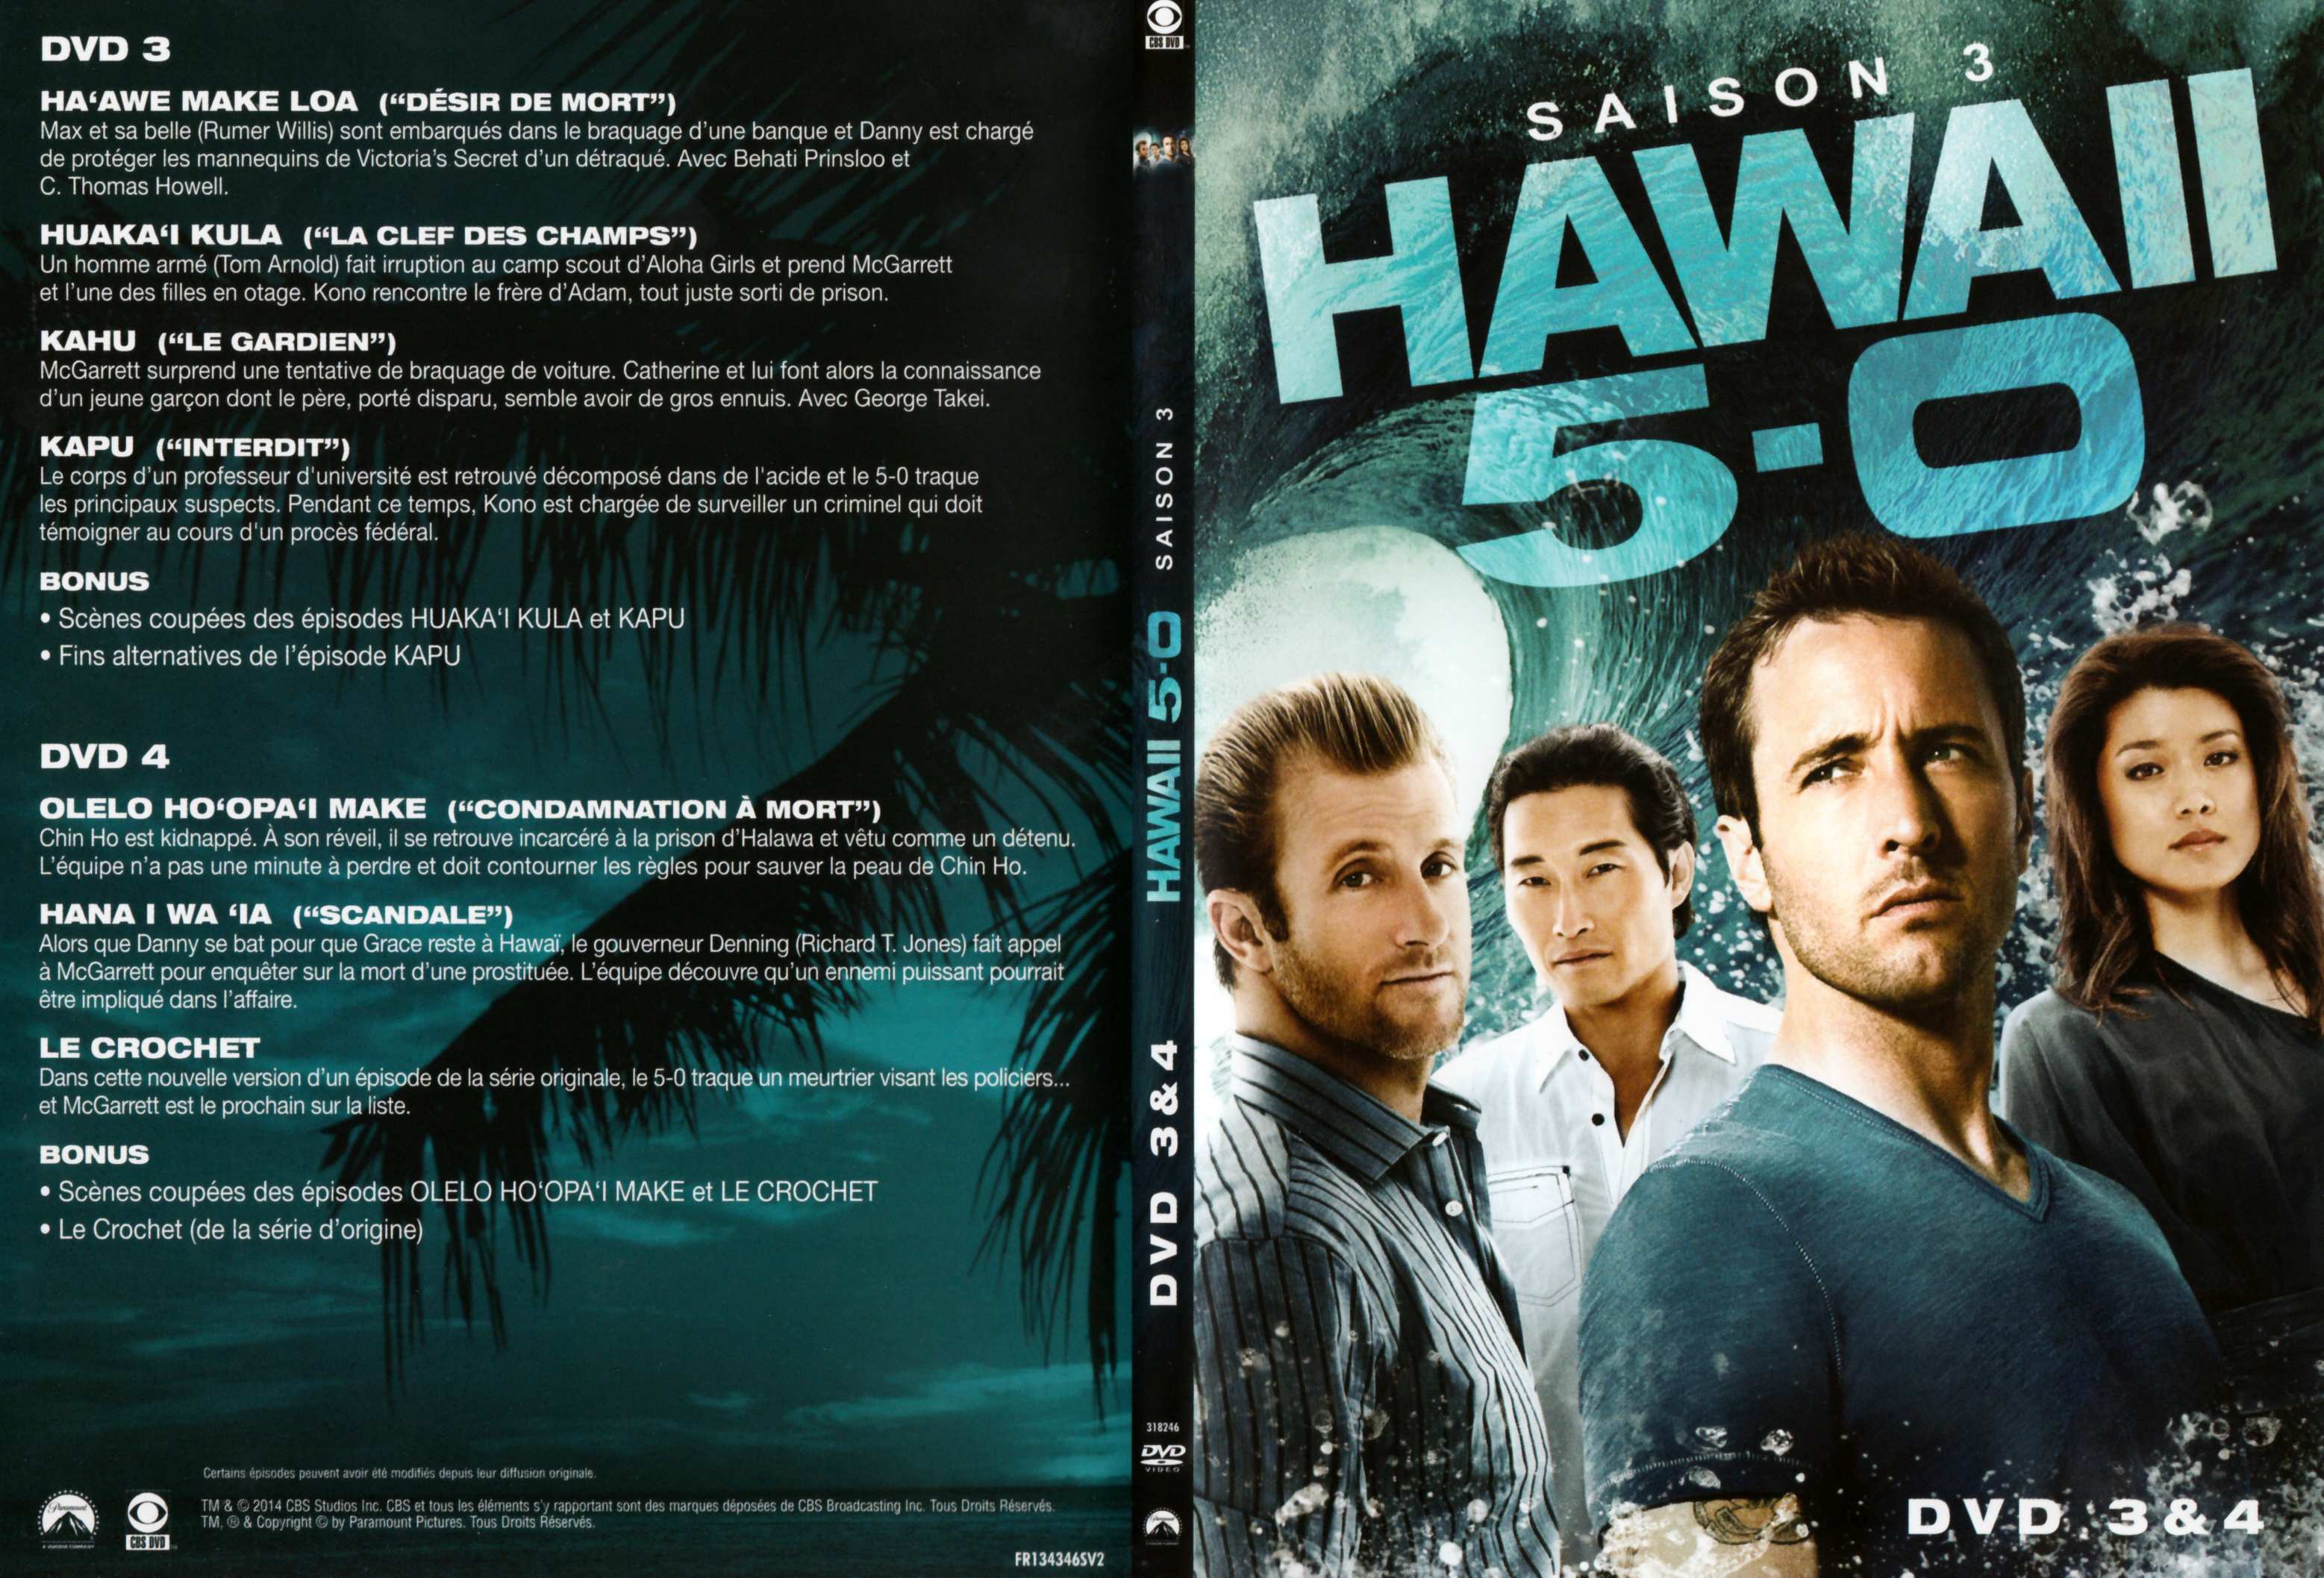 Jaquette DVD Hawaii Five-O Saison 3 DVD 2